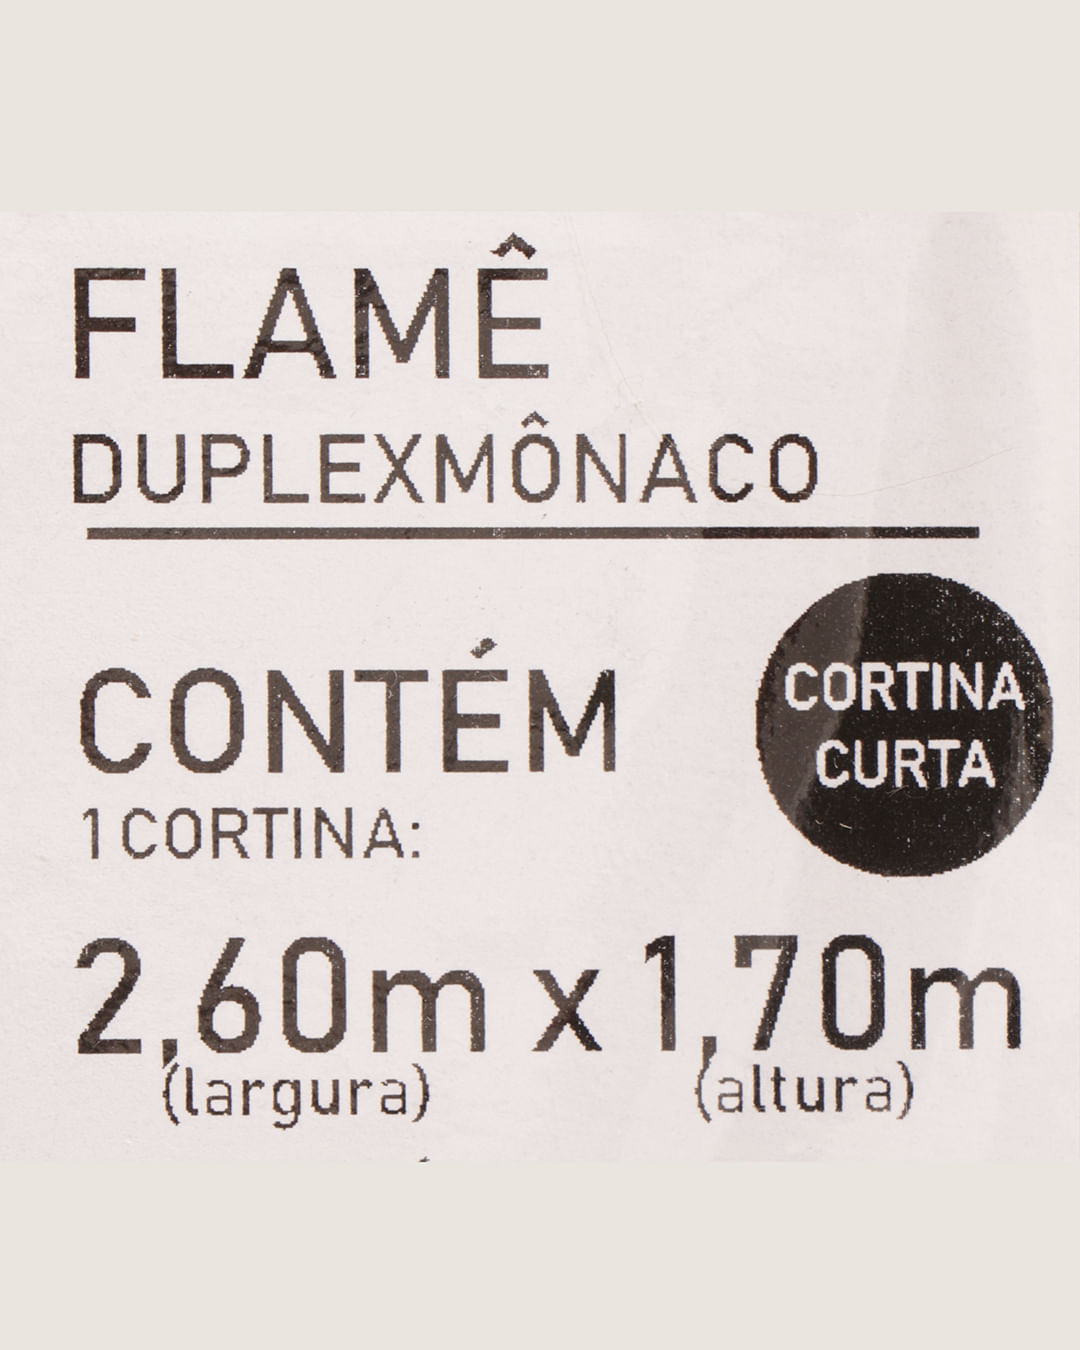 Cort-Duplex-260x170-Monaco-Flameareia---Bege